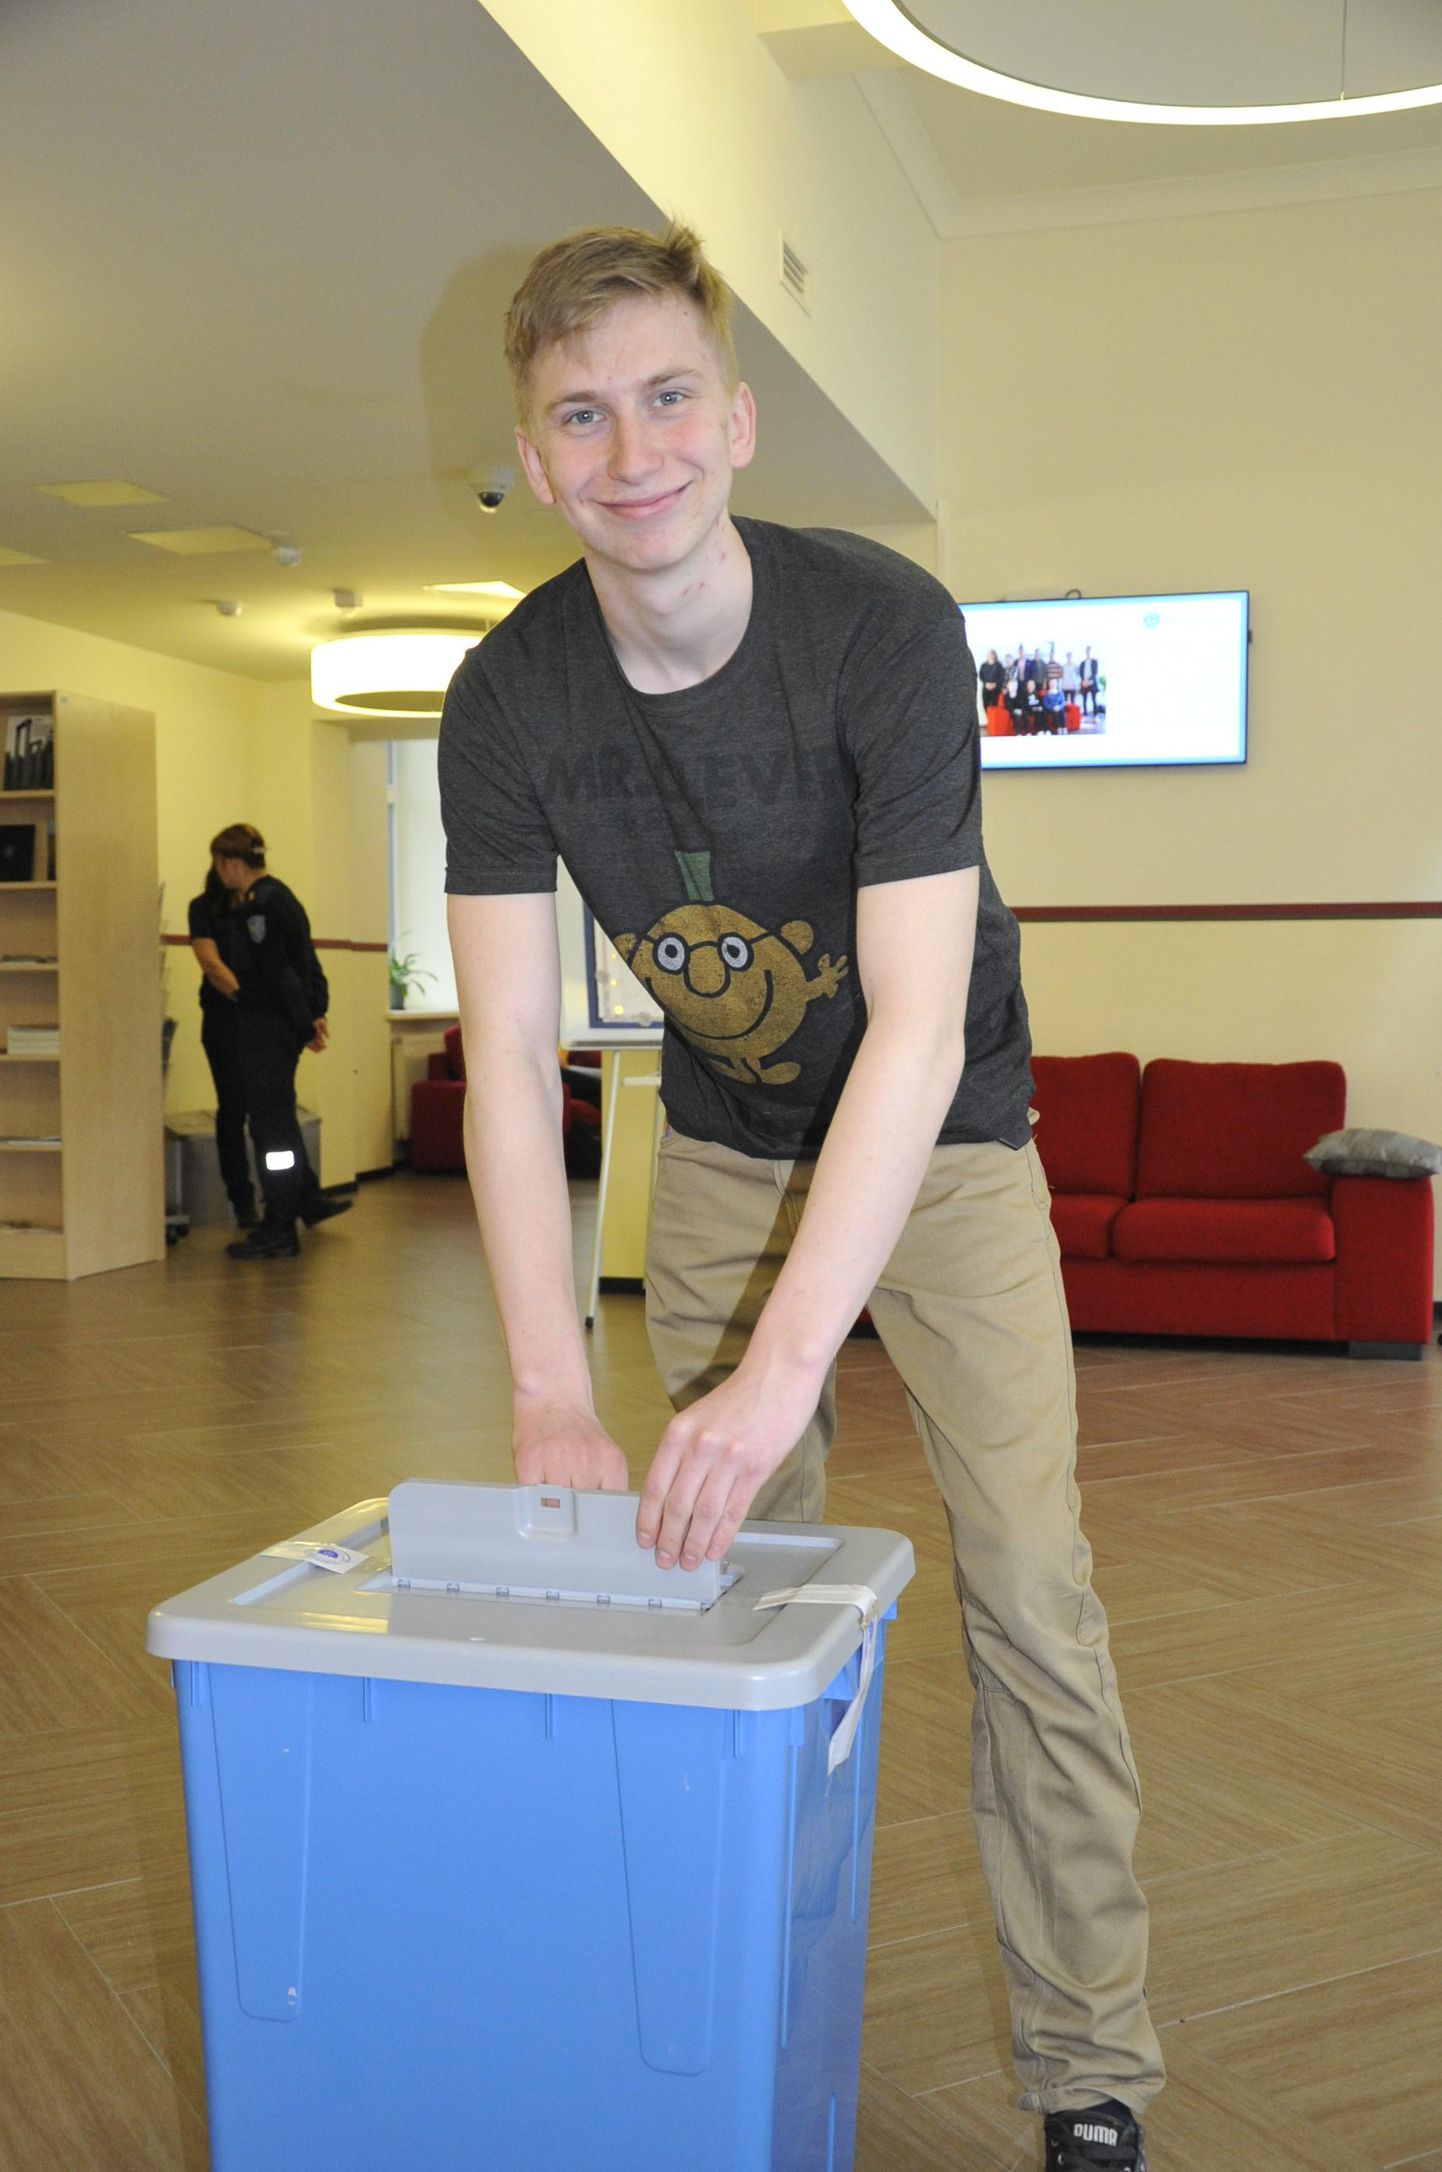 Eelmisel teisipäeval oli Jõgeva valla noortevolikogu valimiskast Jõgevamaa gümnaasiumis, kus valimistel andis oma hääle ka abiturient Janek Zarin. Valimistulemused selguvad neljapäeval.